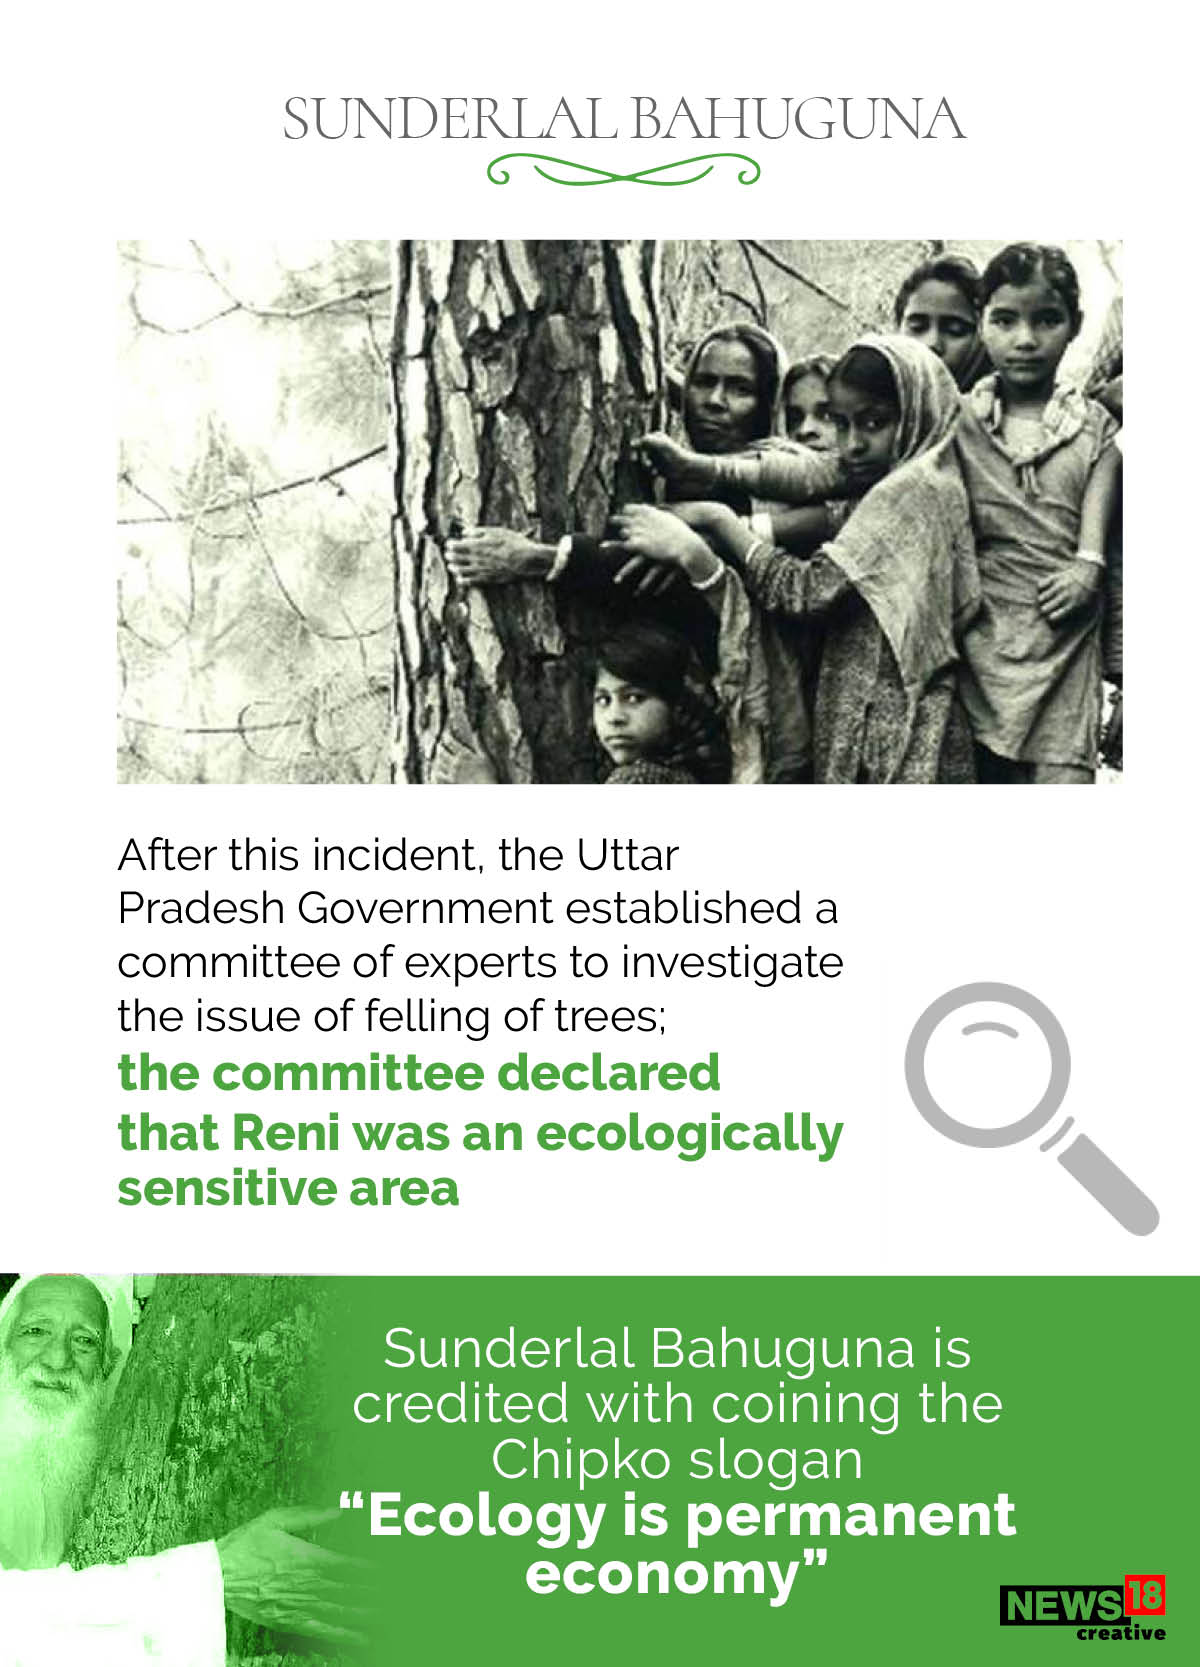 Sunderlal Bahuguna and the story of Chipko movement